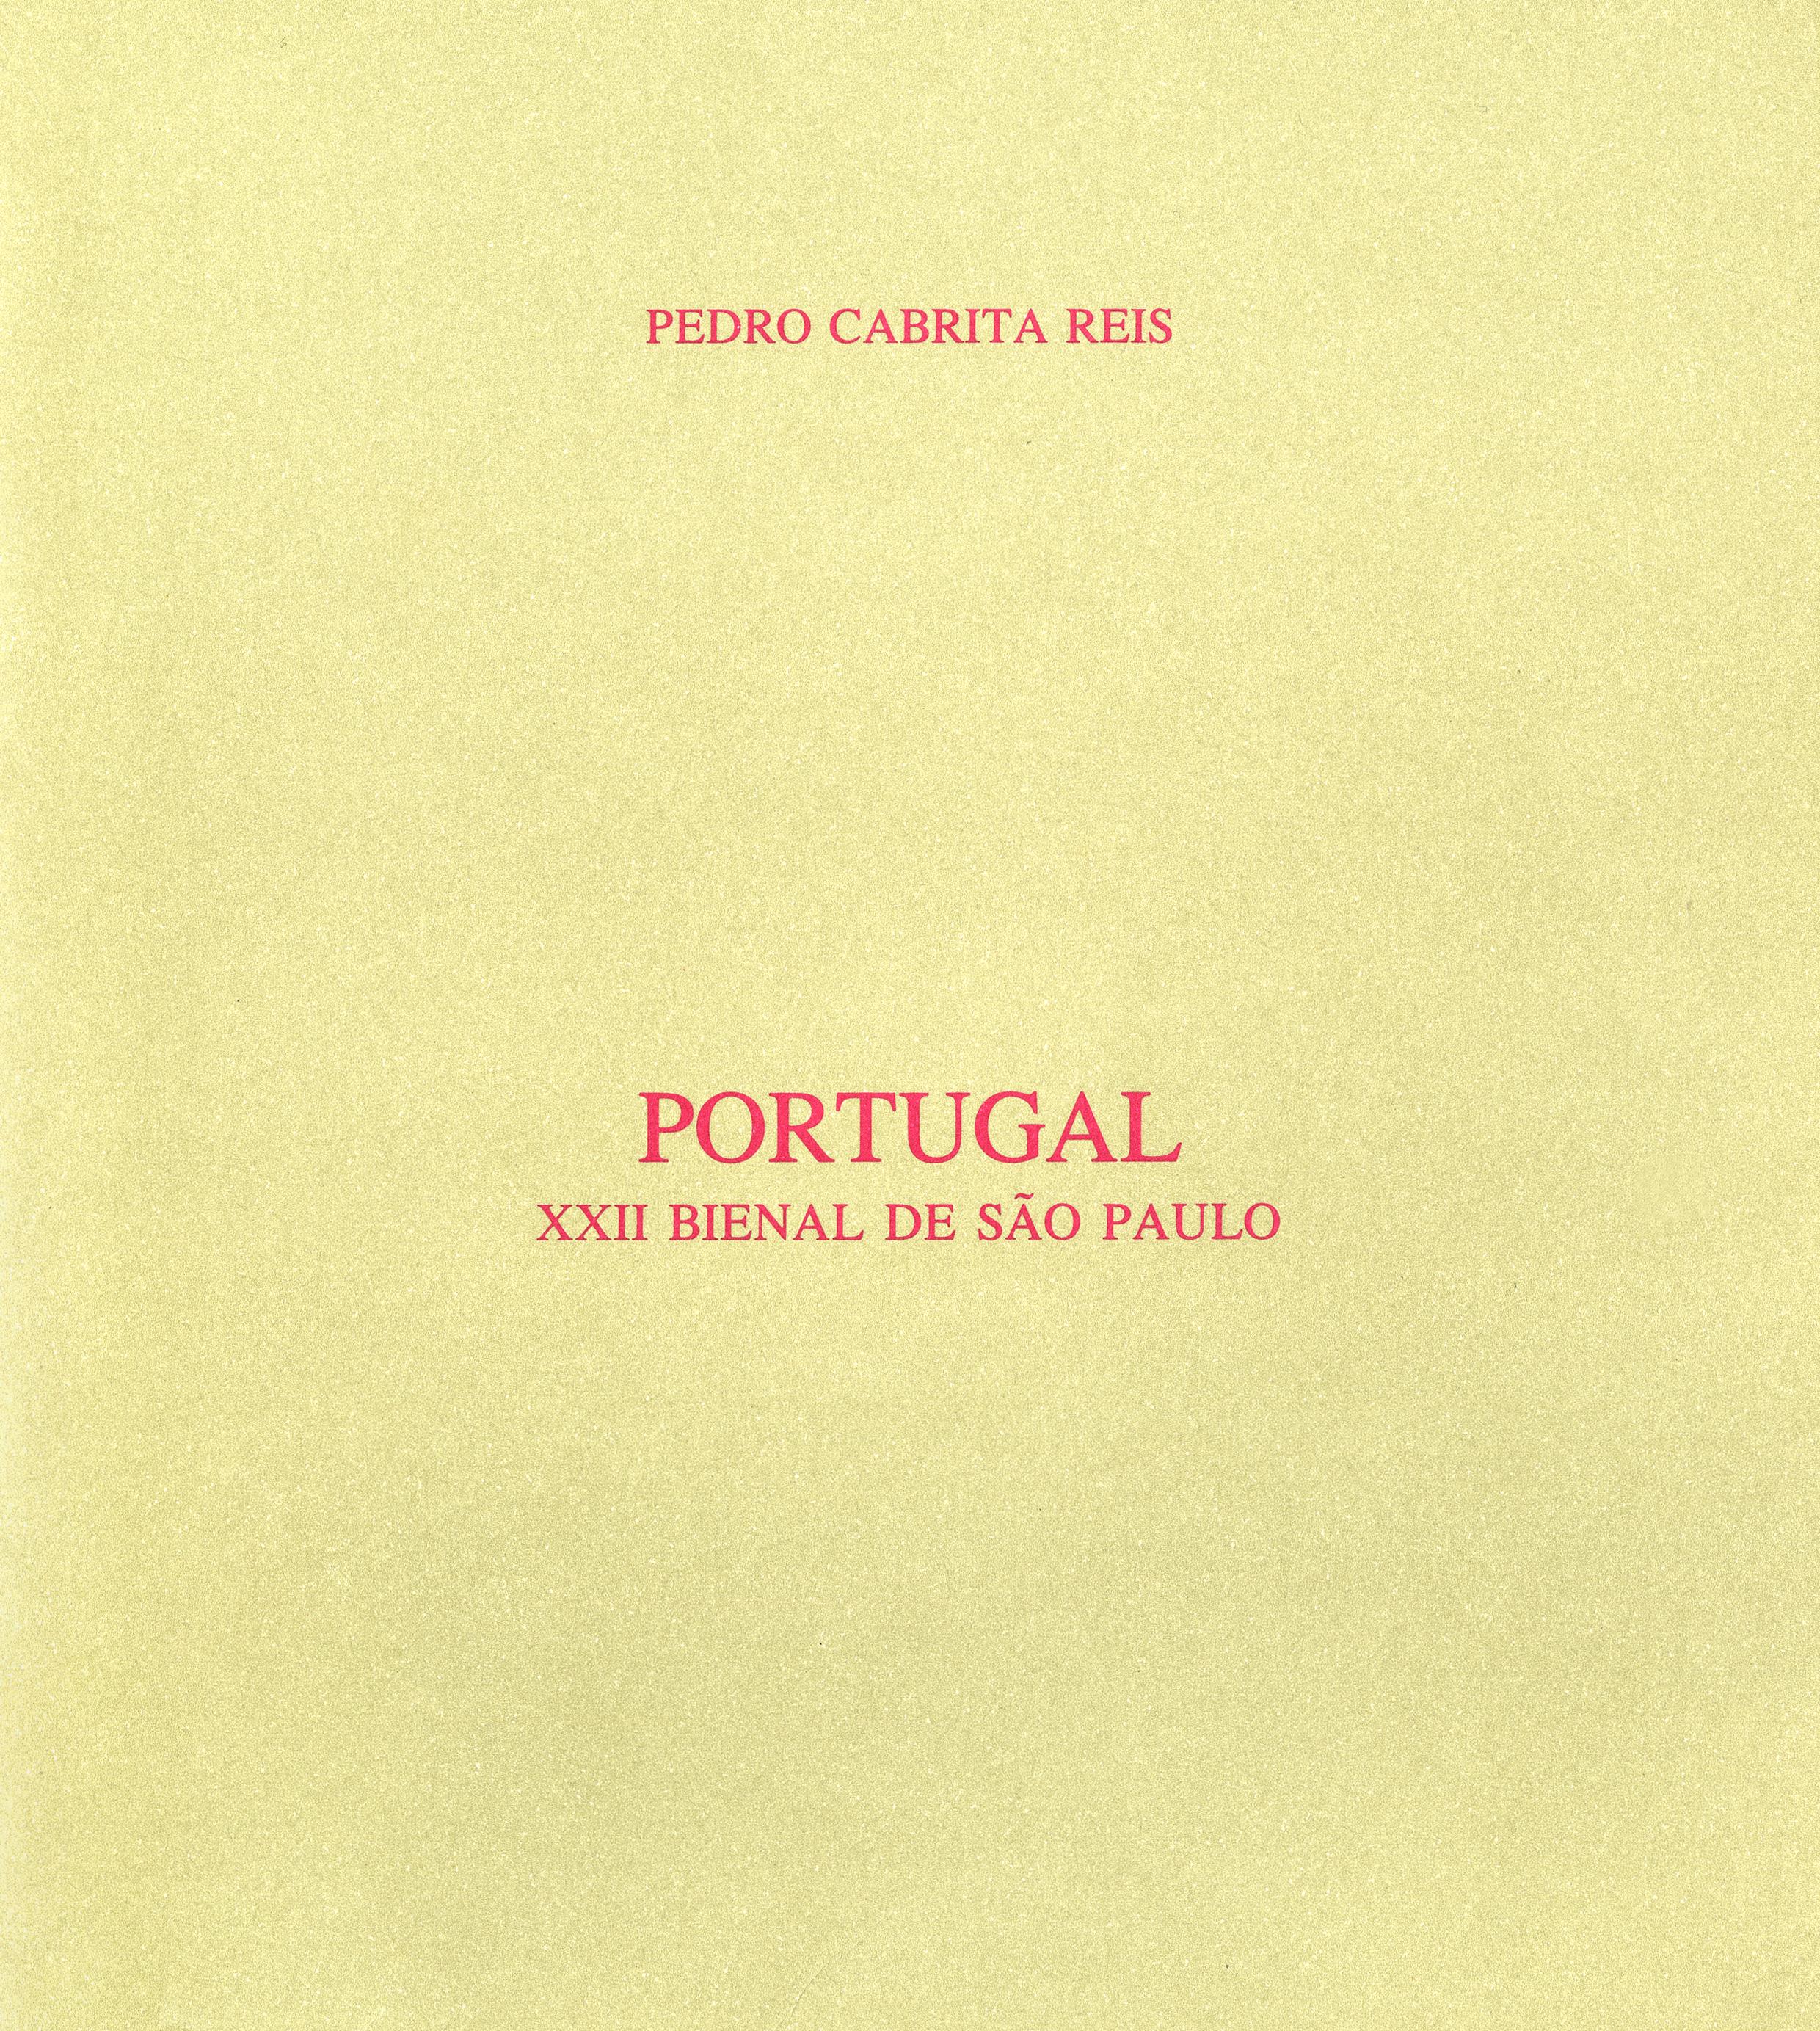 Portugal. XXII Bienal de São Paulo. Pedro Cabrita Reis